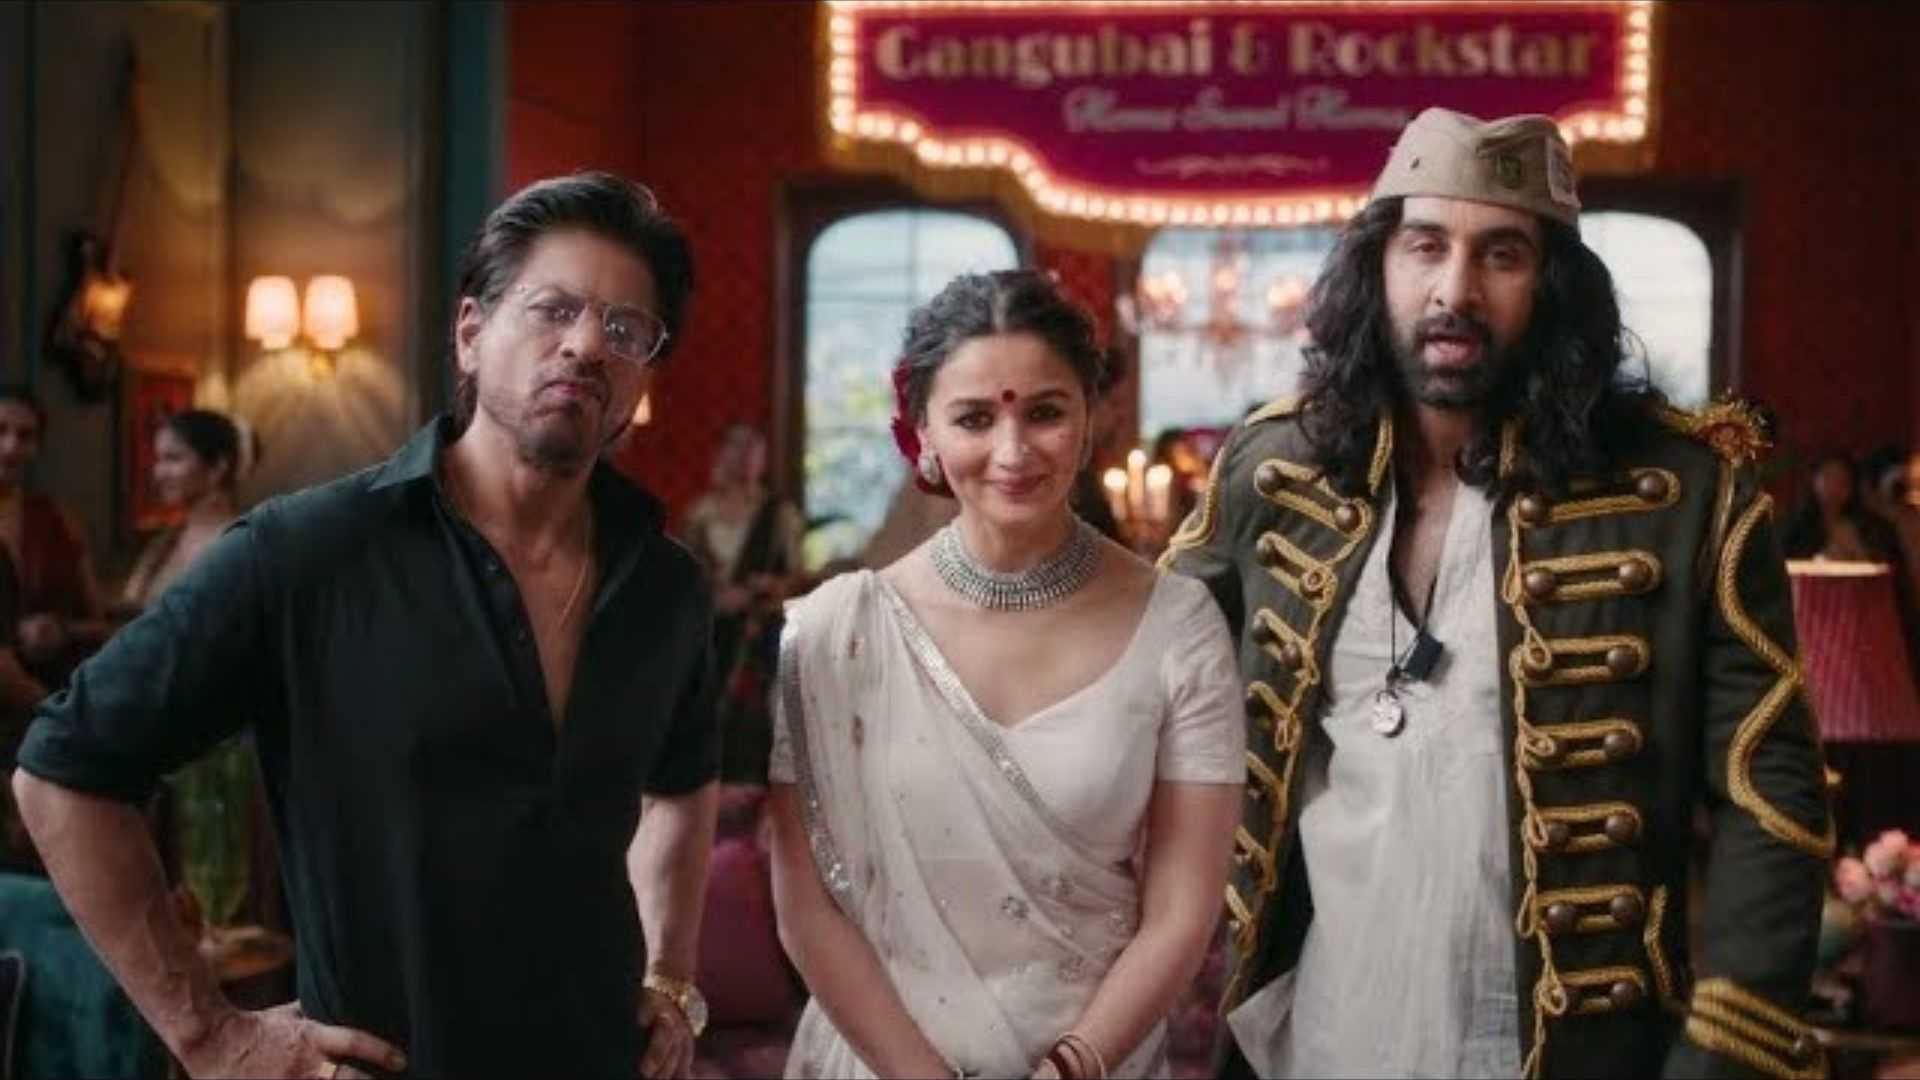 शाहरुख खान, रणबीर कपूर और आलिया भट्ट फनी एड में आए नजर, लोग बोले- फिल्म बनाओ